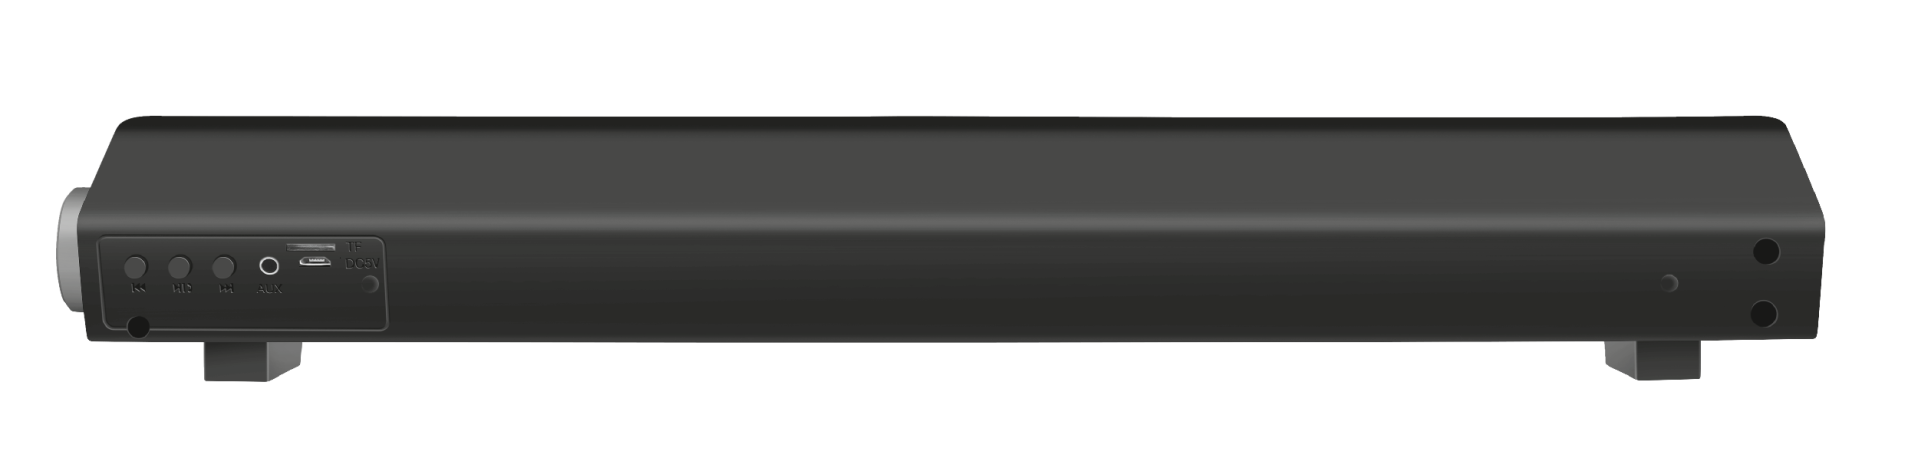 Trust Lino Wireless Soundbar with Bluetooth 20W /